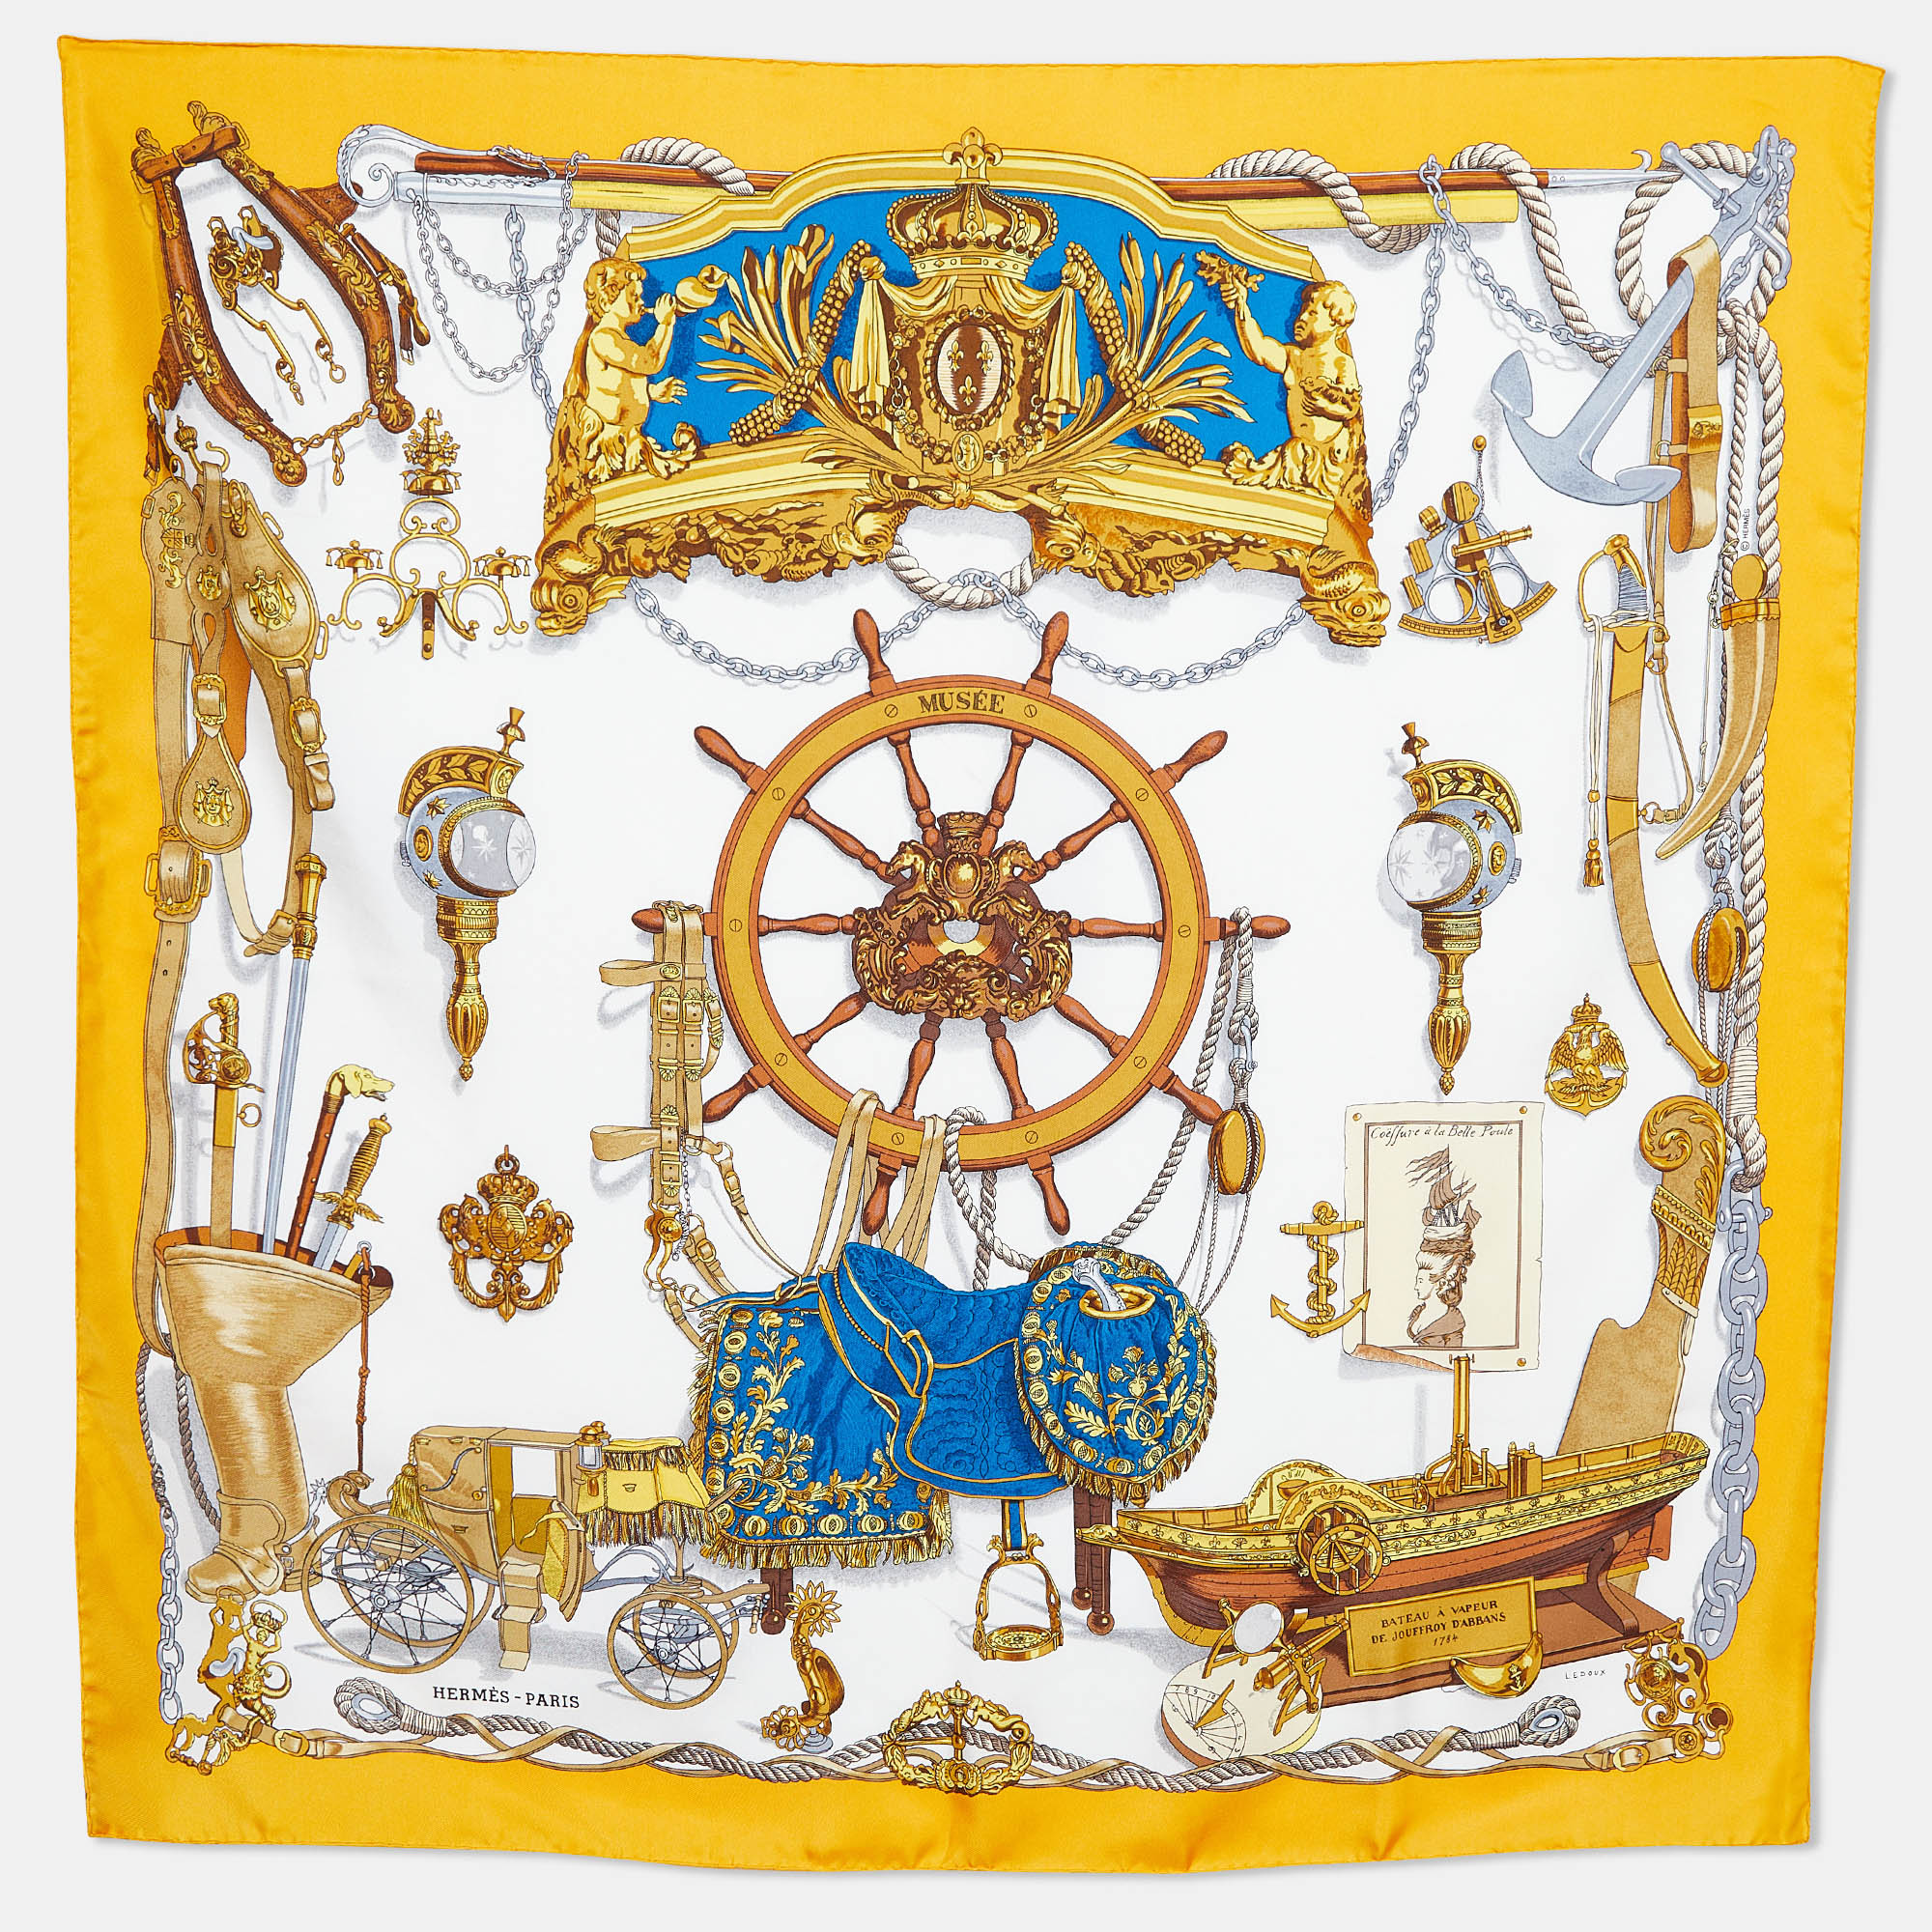 Hermes white/yellow bateau a vapeur de jouffroy d&rsquo;abbans 1784 silk scarf